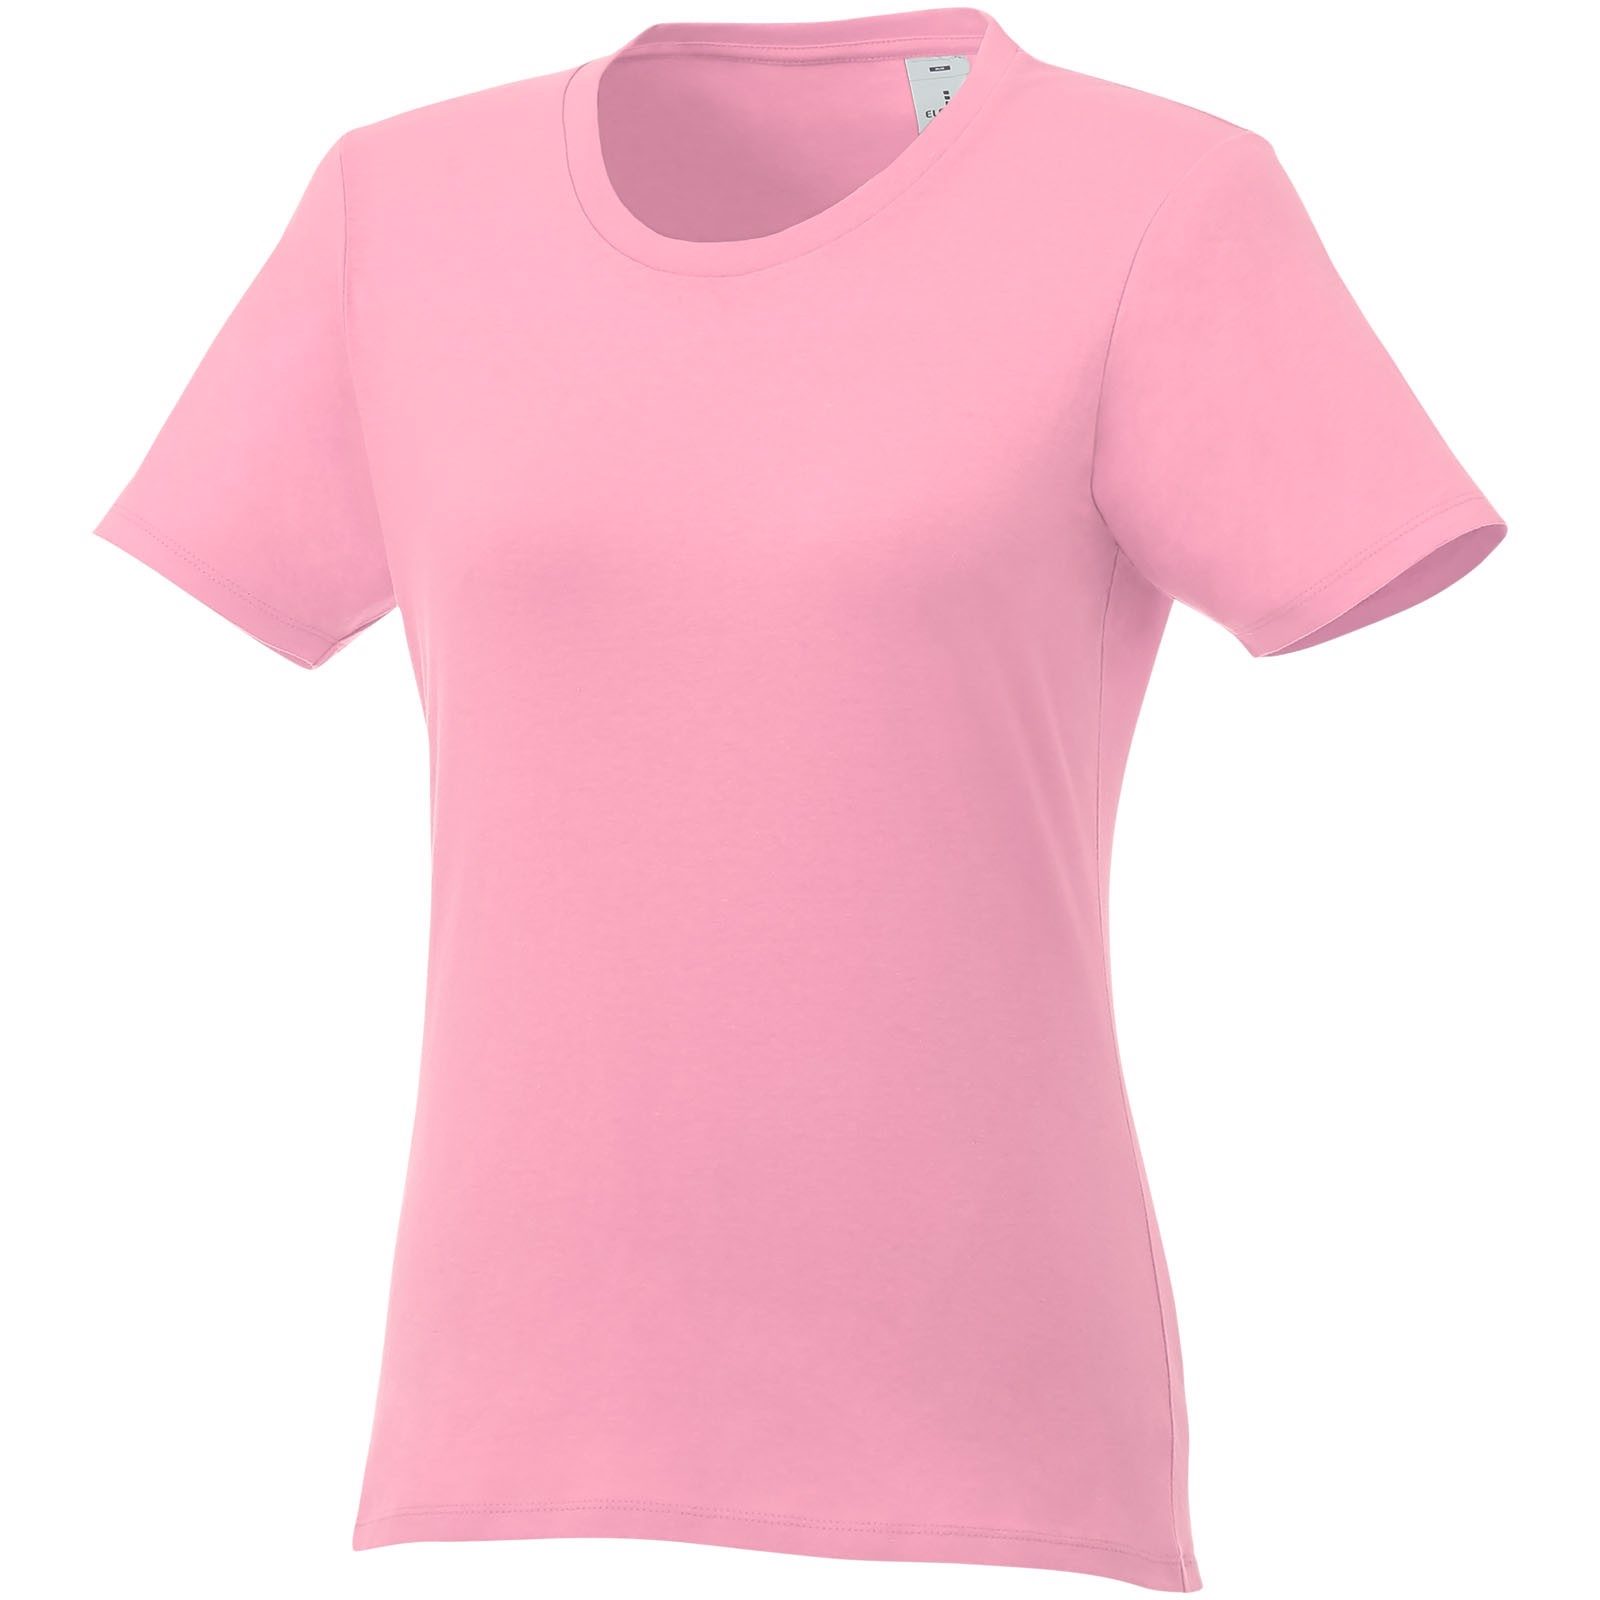 Dámské triko Heros s krátkým rukávem - Světle růžová / XL